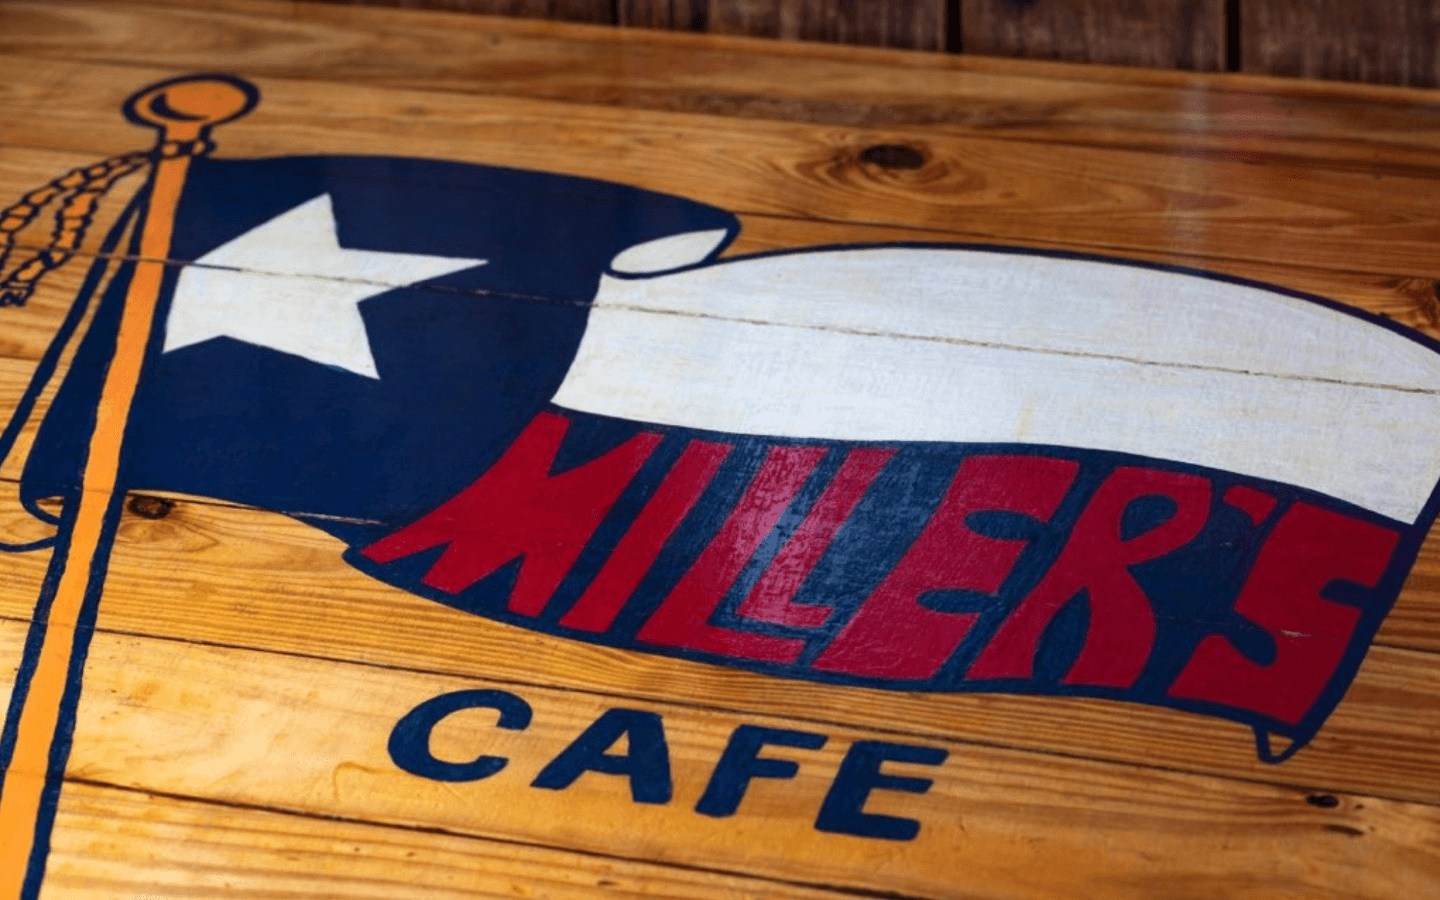 Miller's Cafe Rewards